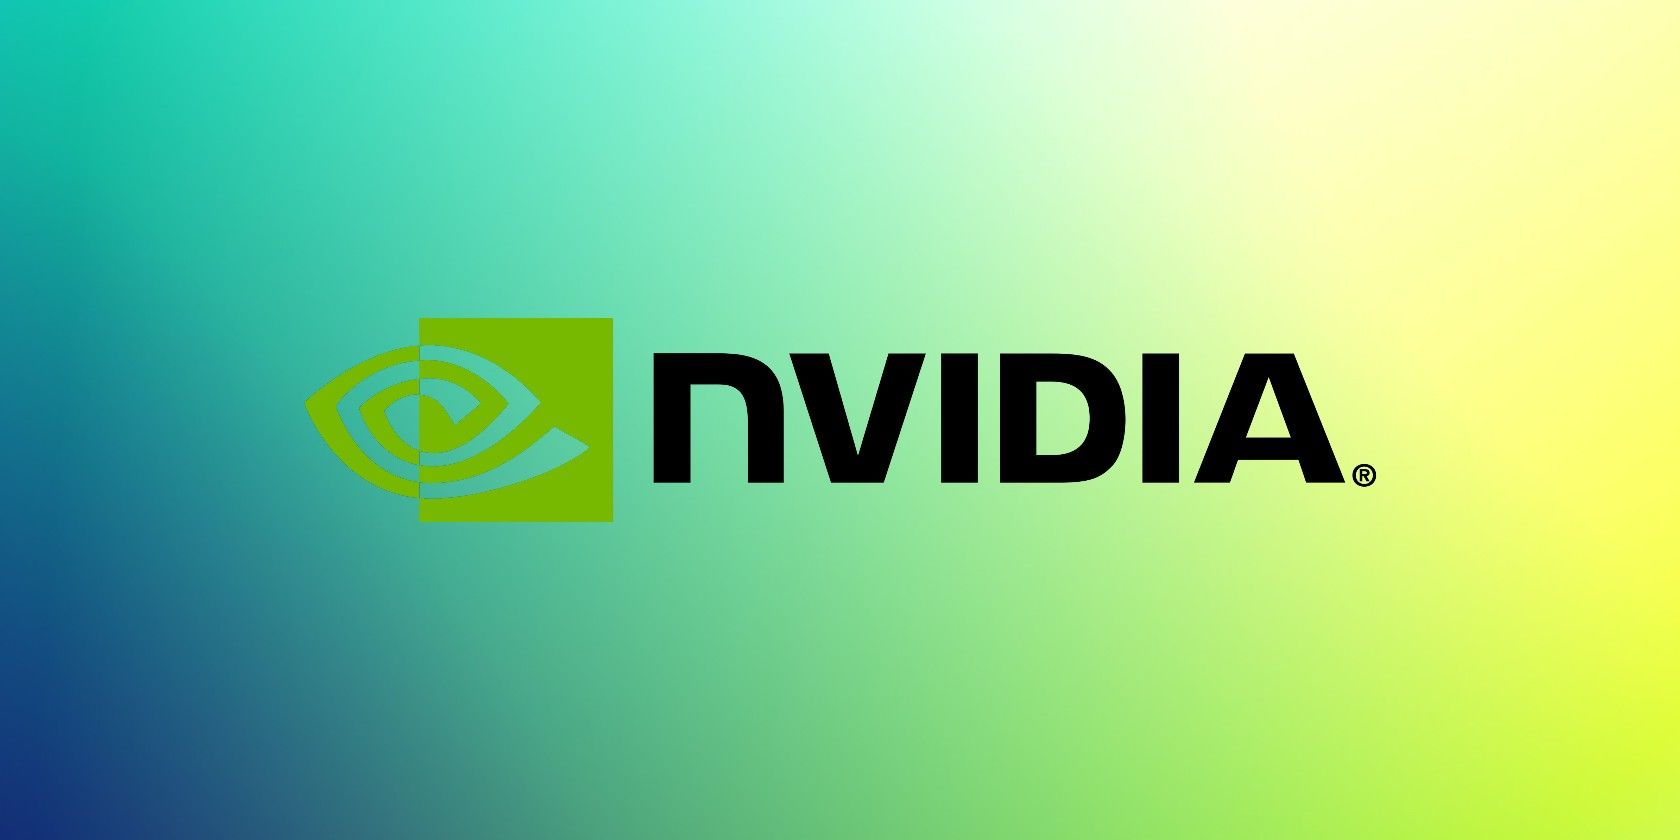 nvidia logo feature - Cos’è la BAR ridimensionabile di Nvidia? Come funziona?